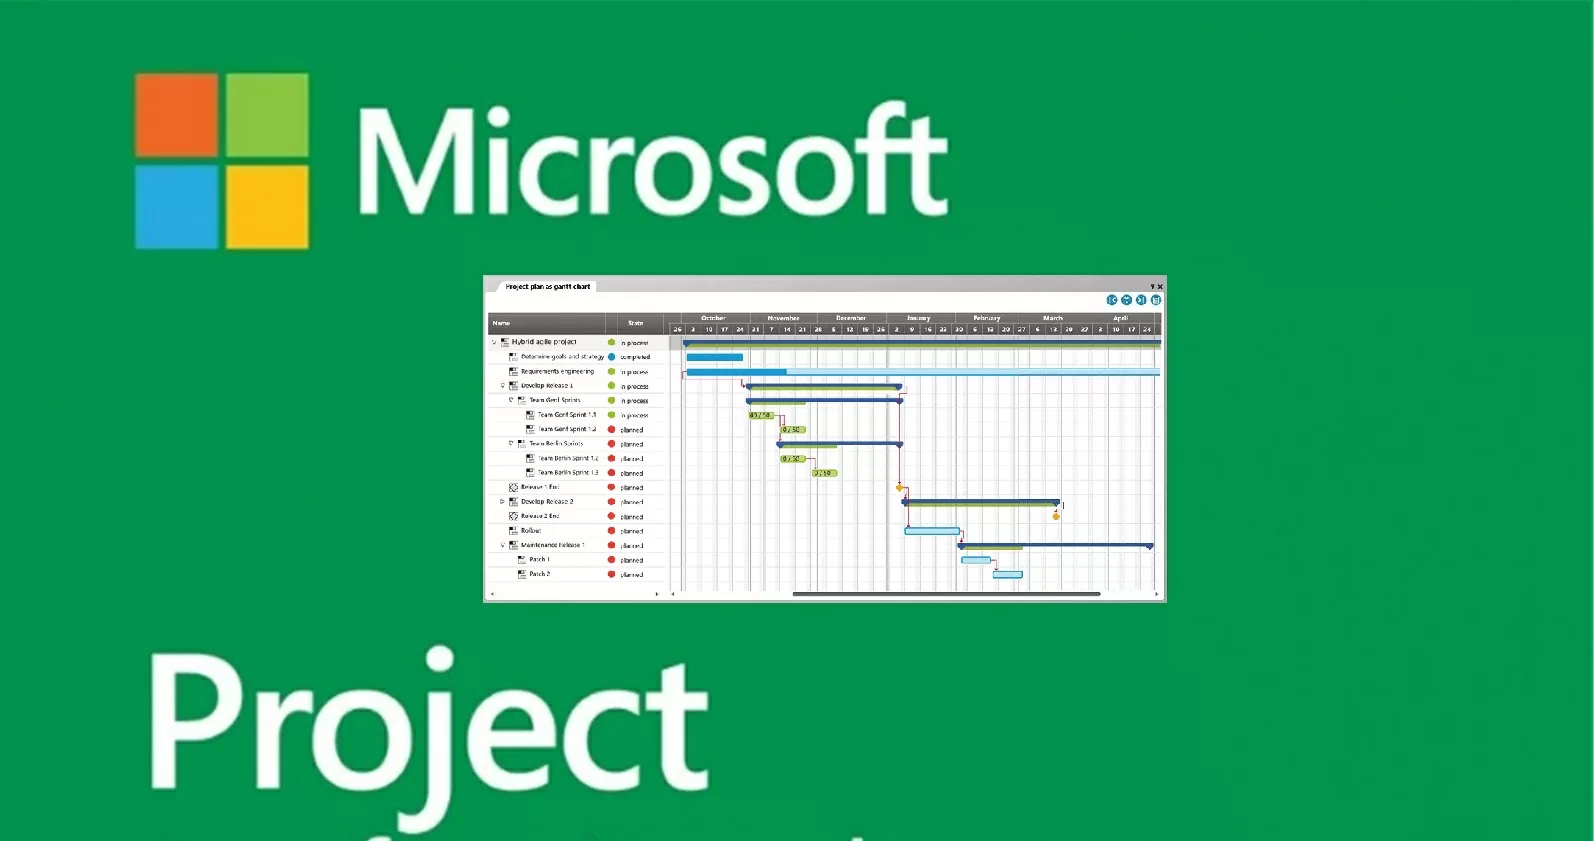 Microsoft Project में पूर्वानुमानों के विरुद्ध परियोजना की प्रगति का विश्लेषण कैसे करें